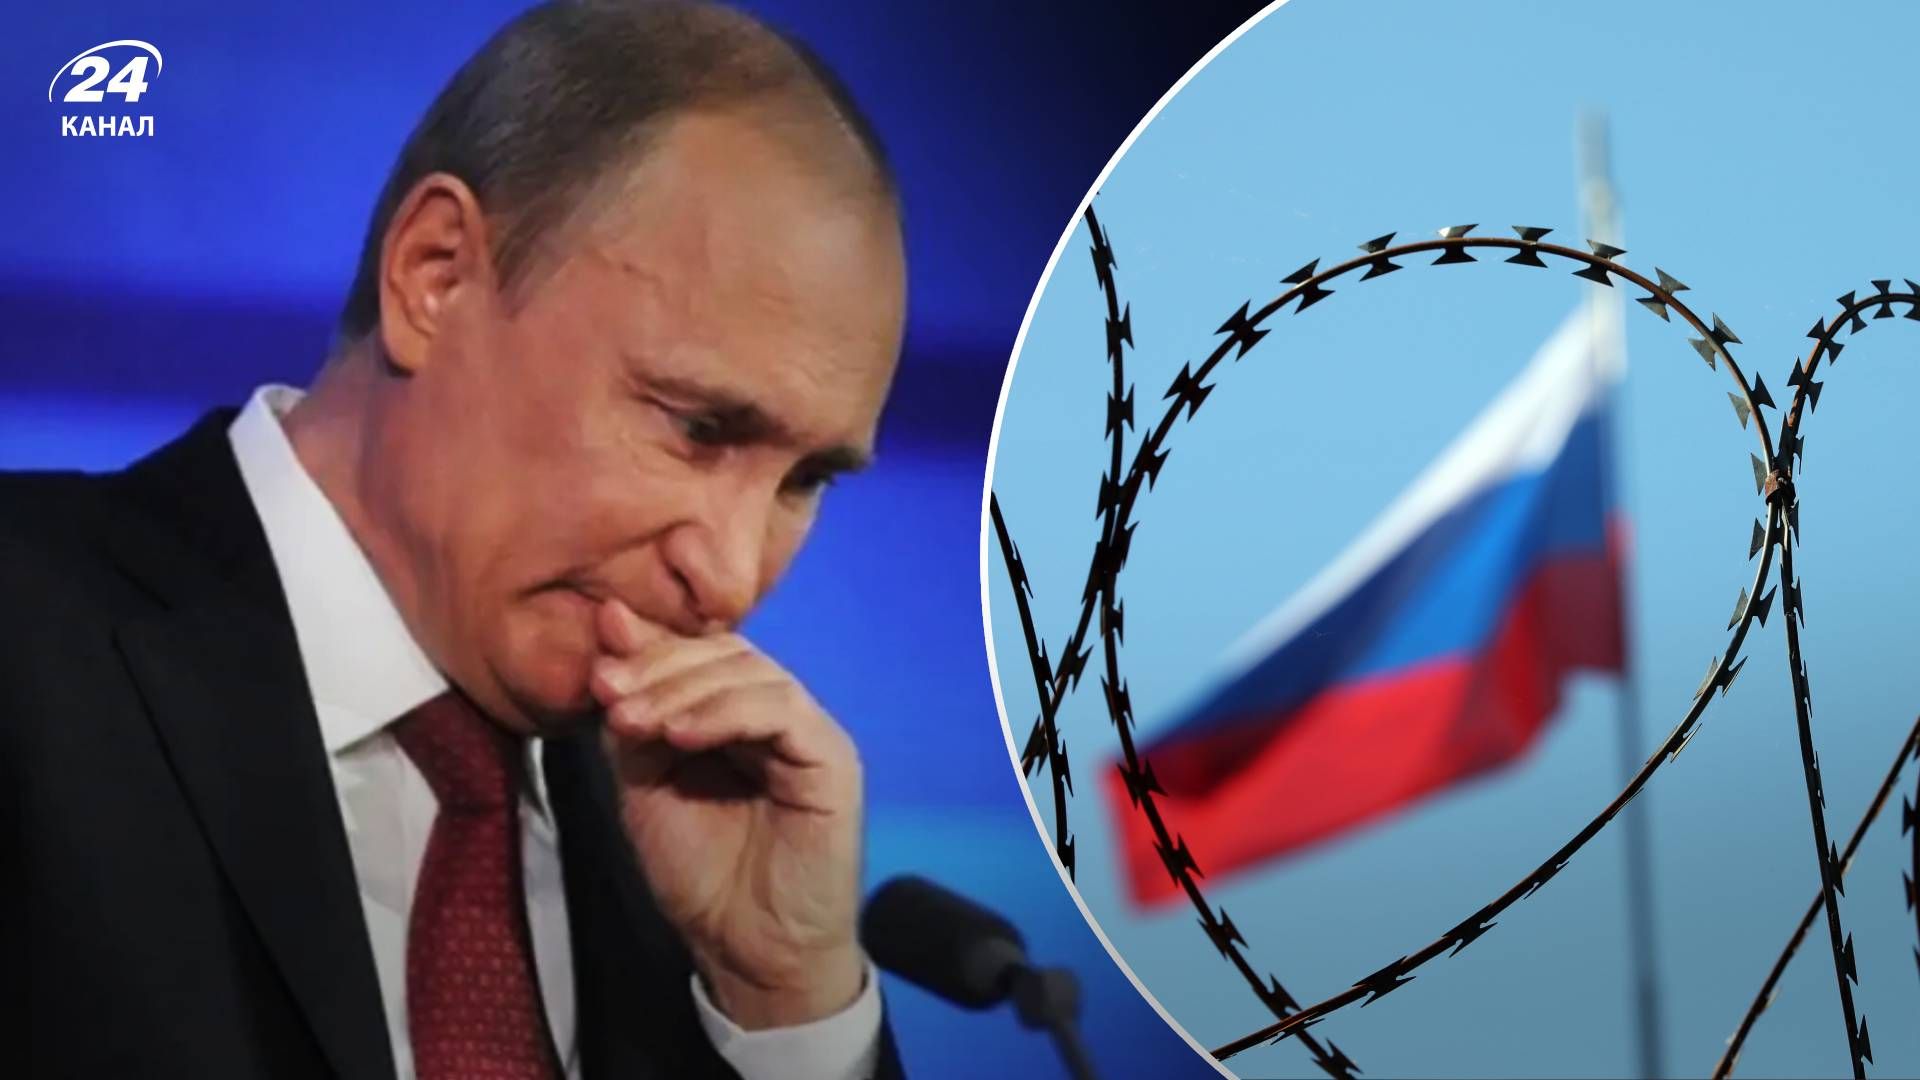  Путин может сам себя свергнуть - как может произойти дворцовый переворот в Кремле